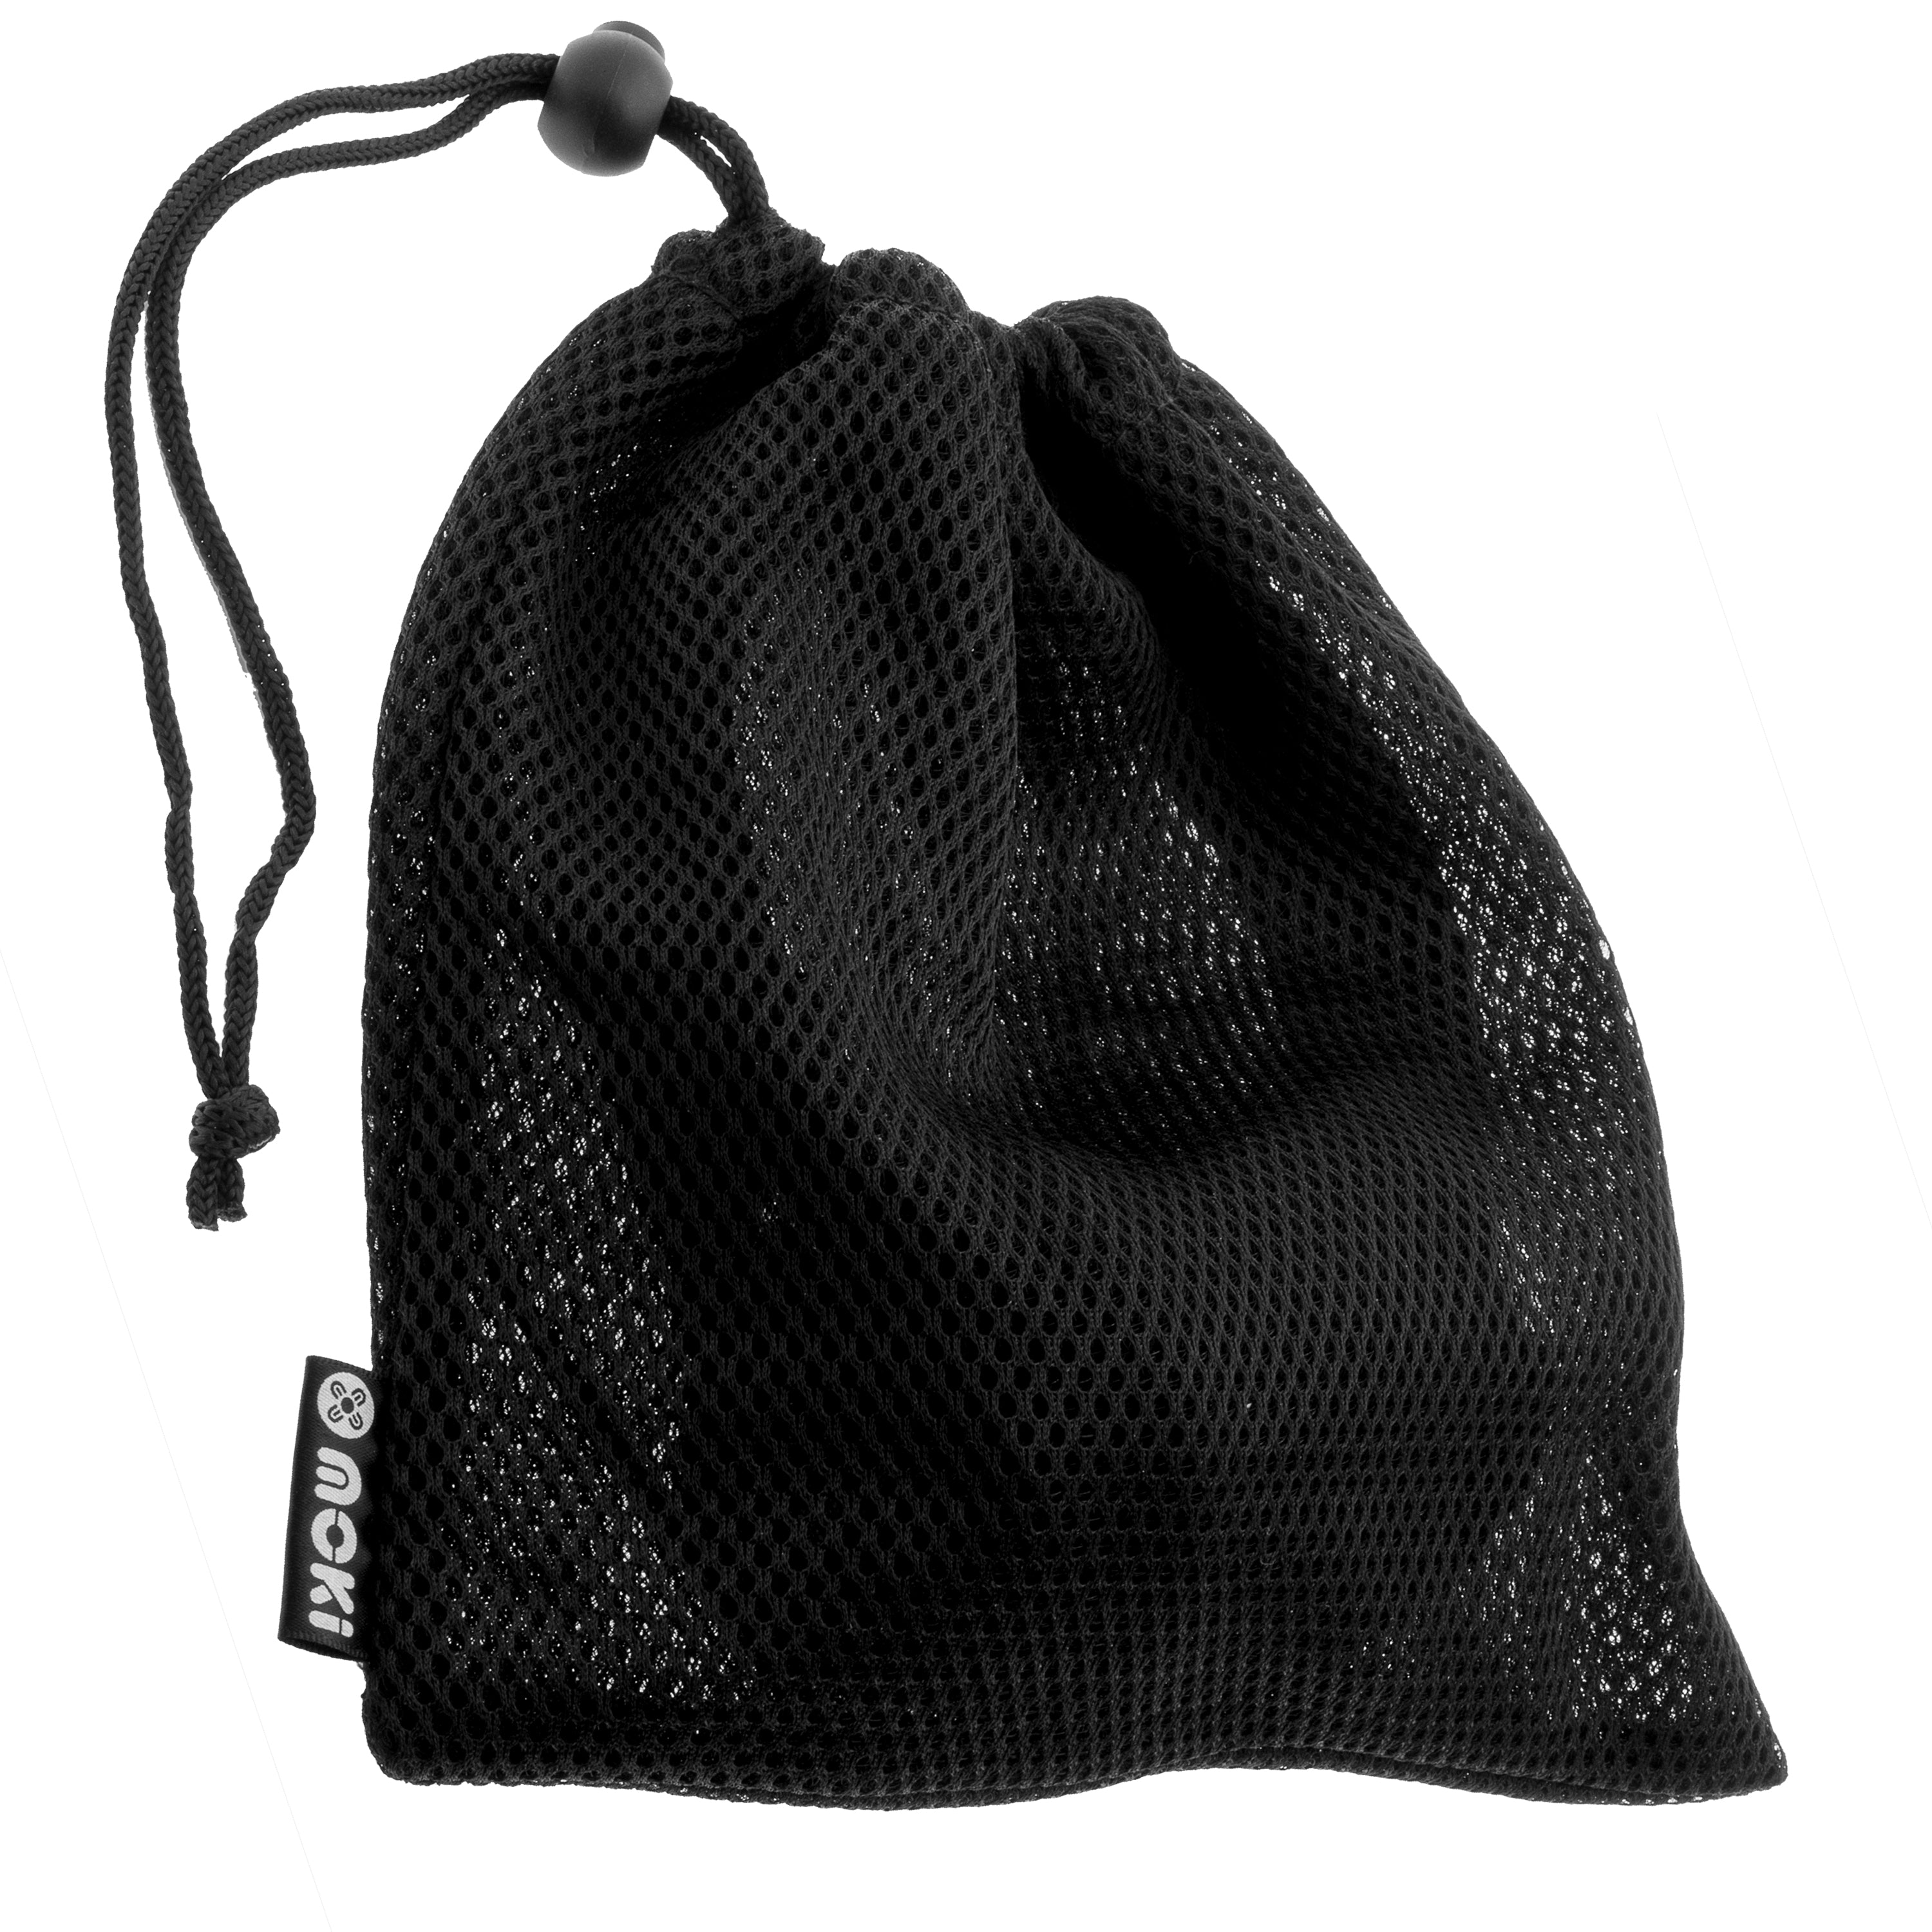 AirMesh Drawstring Bag